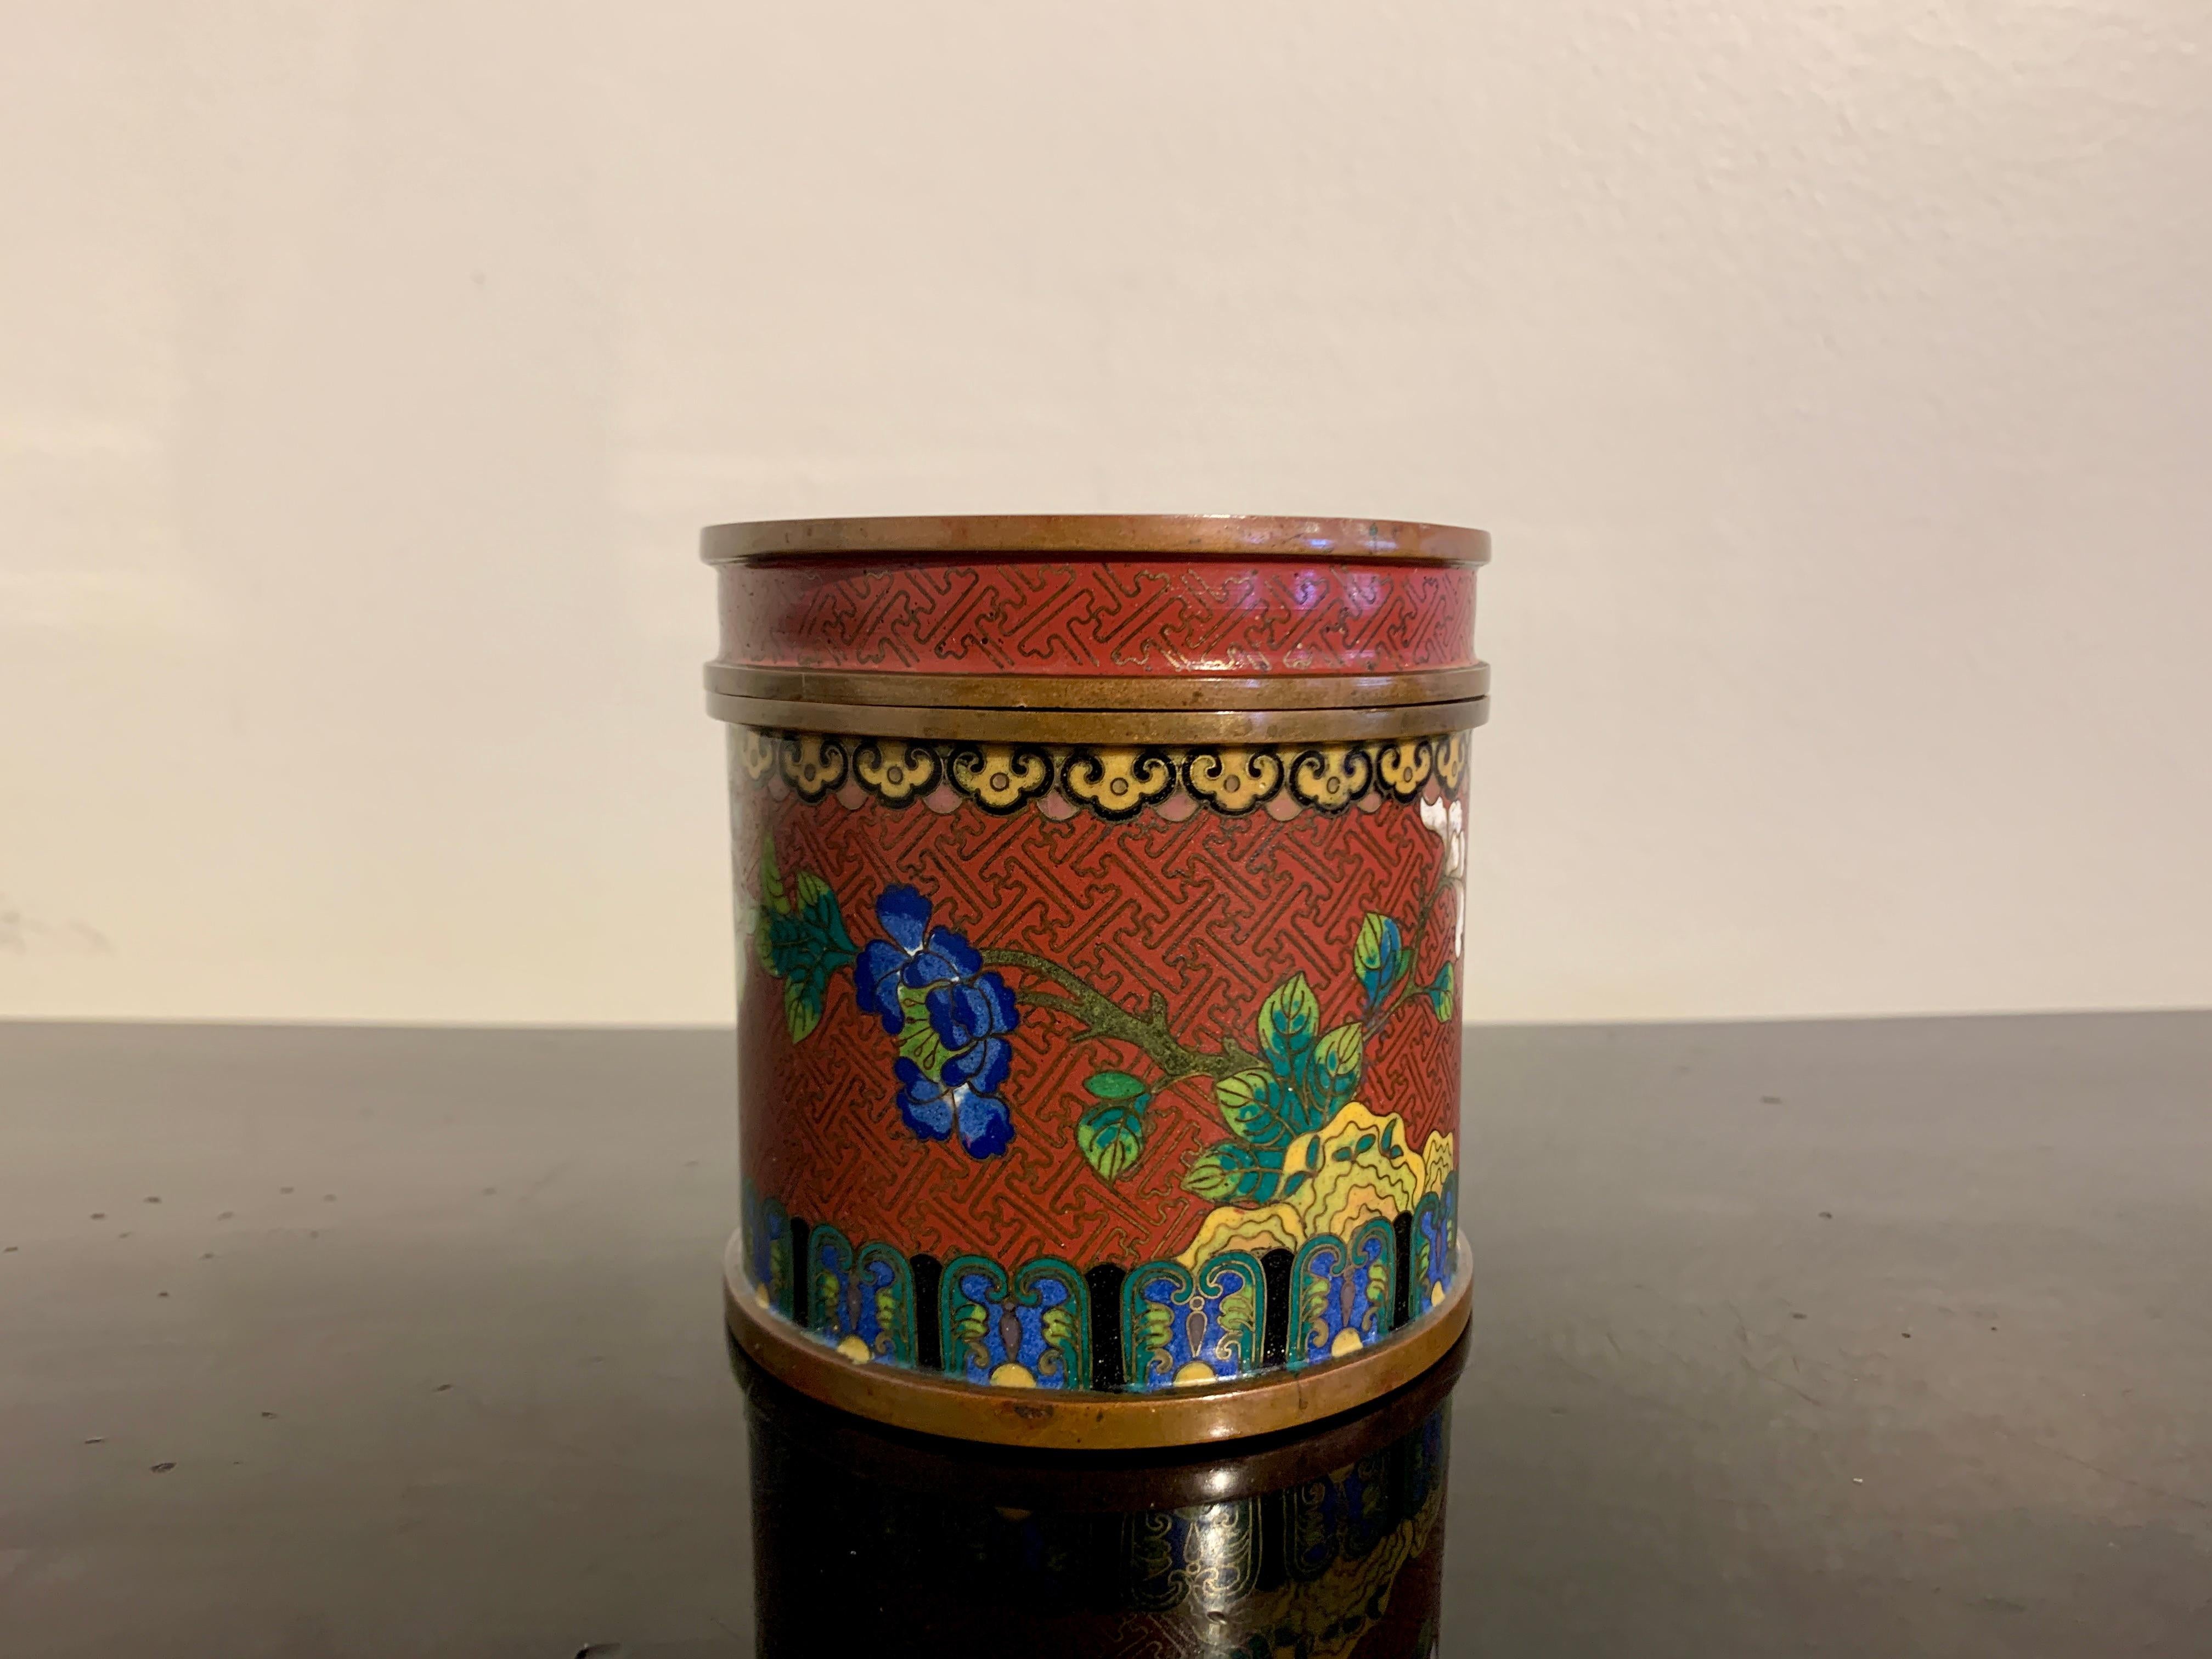 Ravissante boîte cylindrique et couvercle en cloisonné de Lao Tian Li, fin de la dynastie Qing, vers 1900, Chine.

La boîte, de forme cylindrique, est entièrement travaillée en émaux cloisonnés, principalement rouges, bleus, verts, blancs et